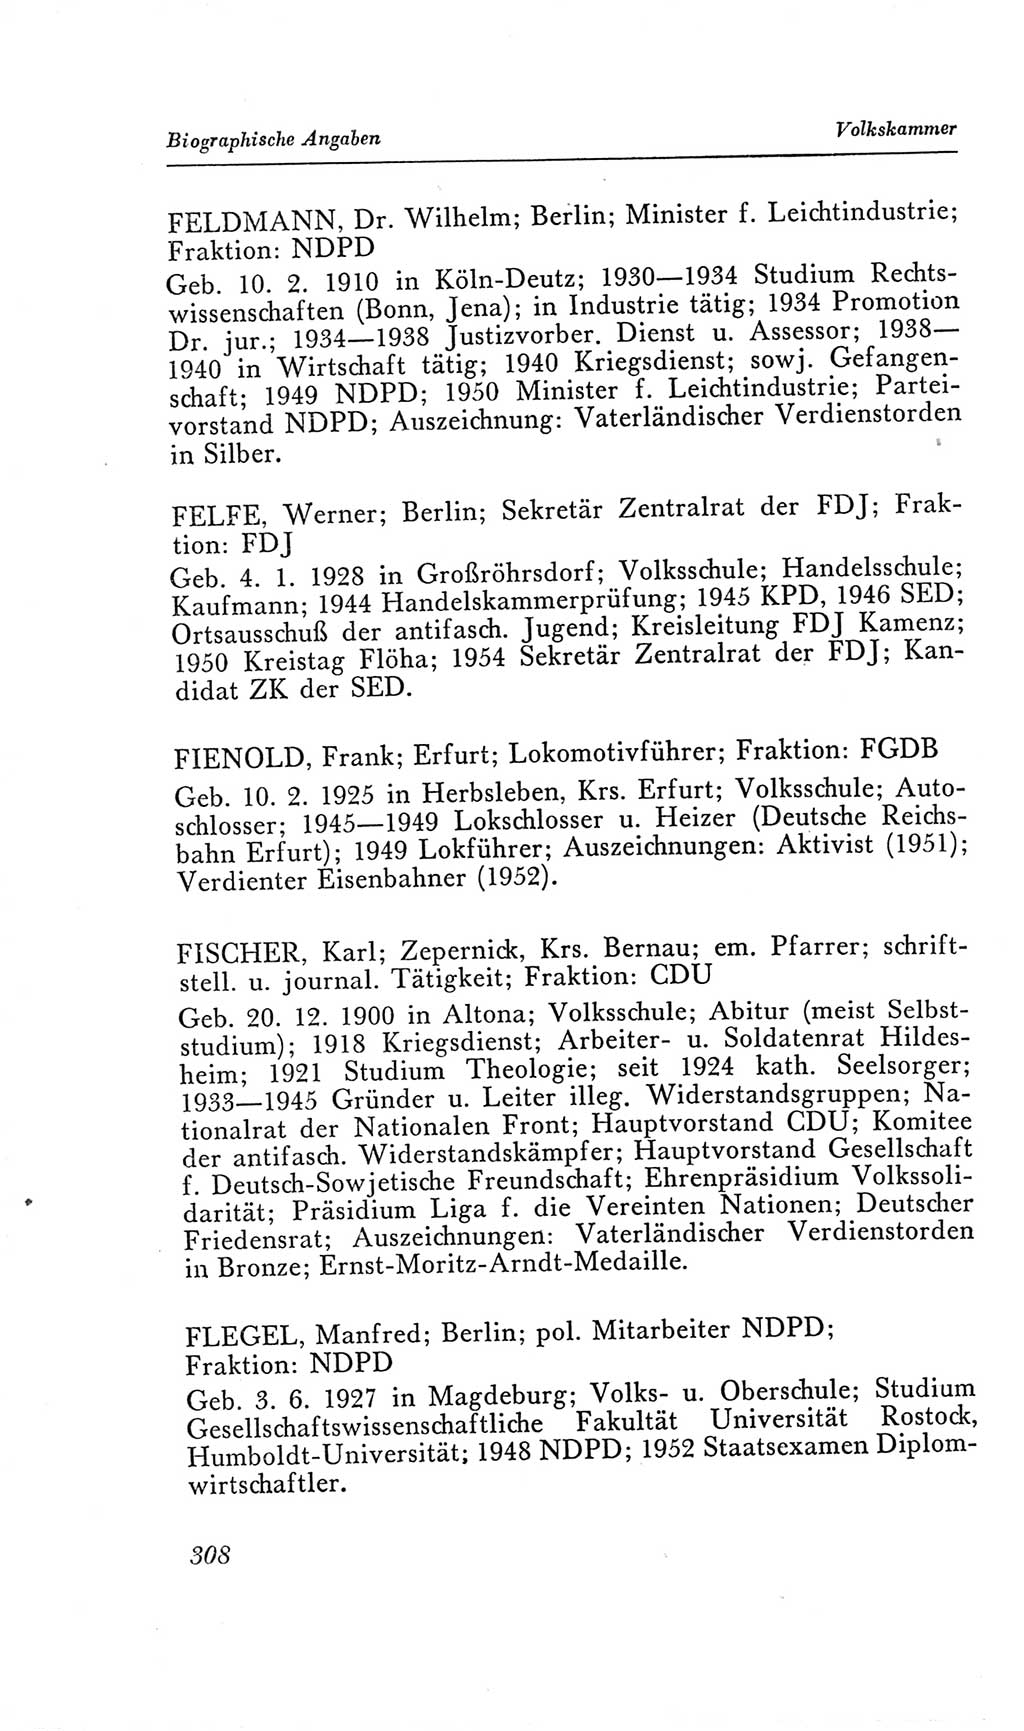 Handbuch der Volkskammer (VK) der Deutschen Demokratischen Republik (DDR), 2. Wahlperiode 1954-1958, Seite 308 (Hdb. VK. DDR, 2. WP. 1954-1958, S. 308)